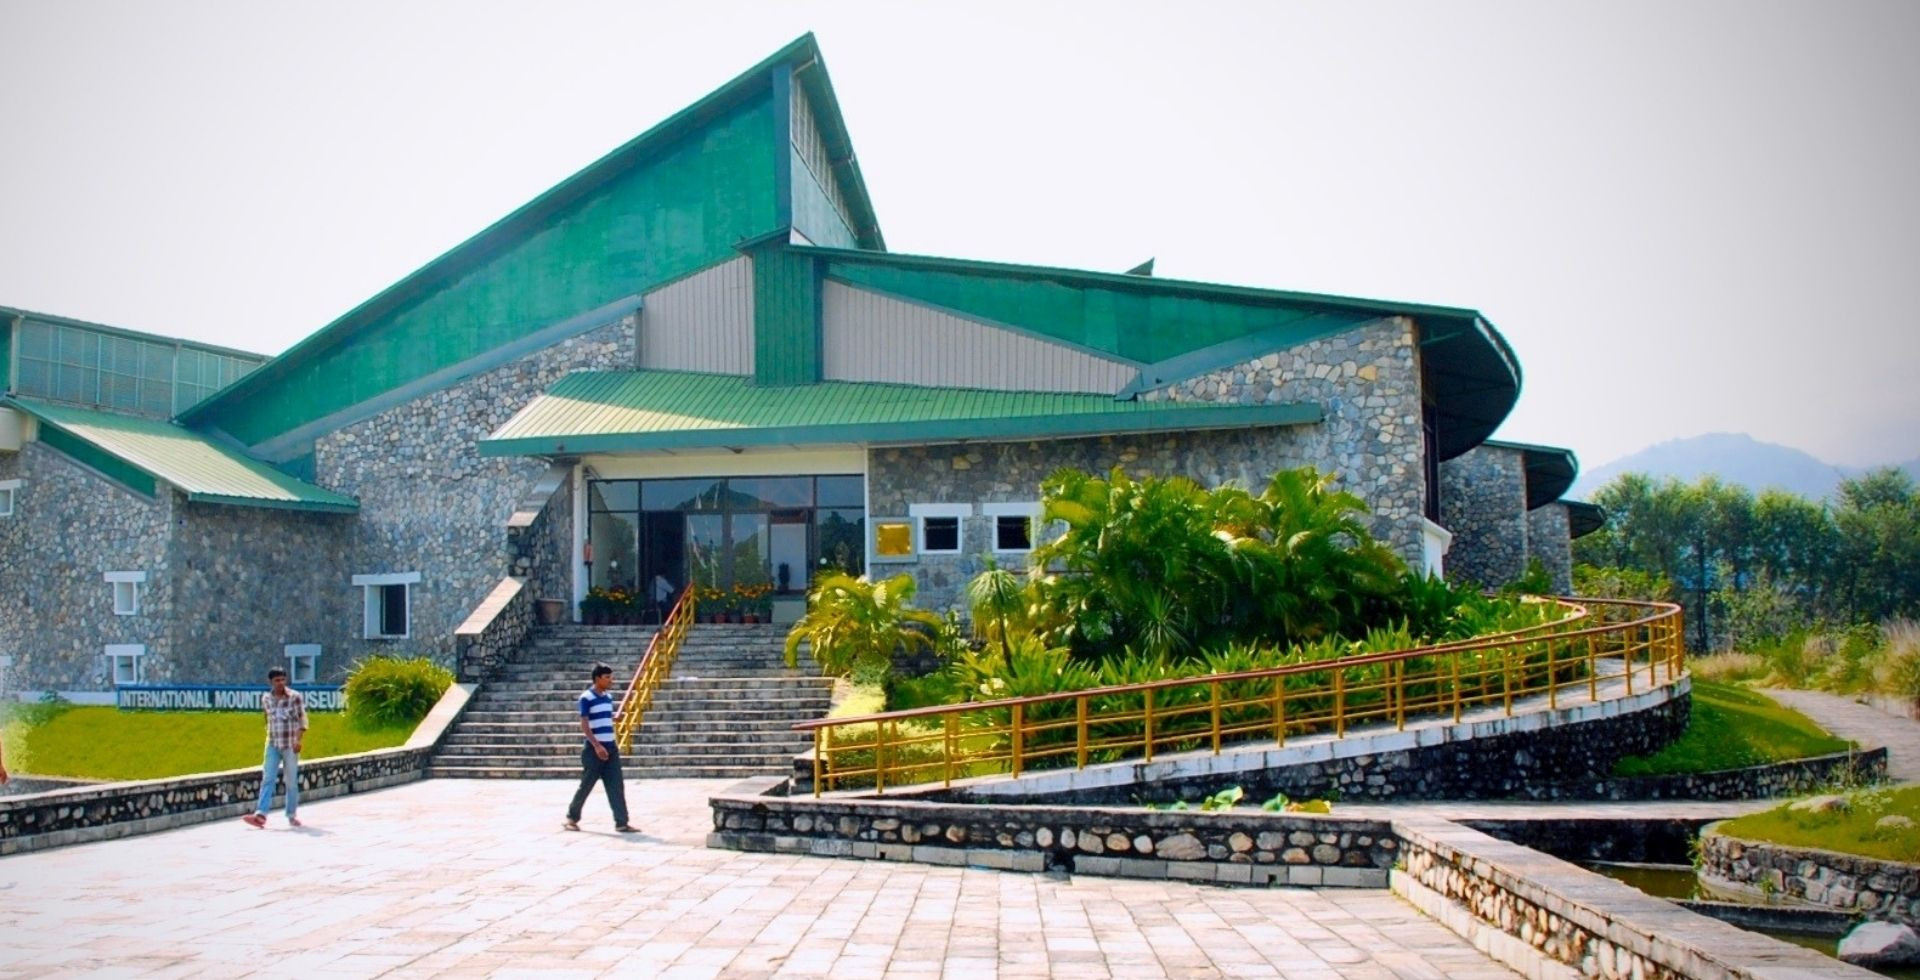 International mountain museum pokhara